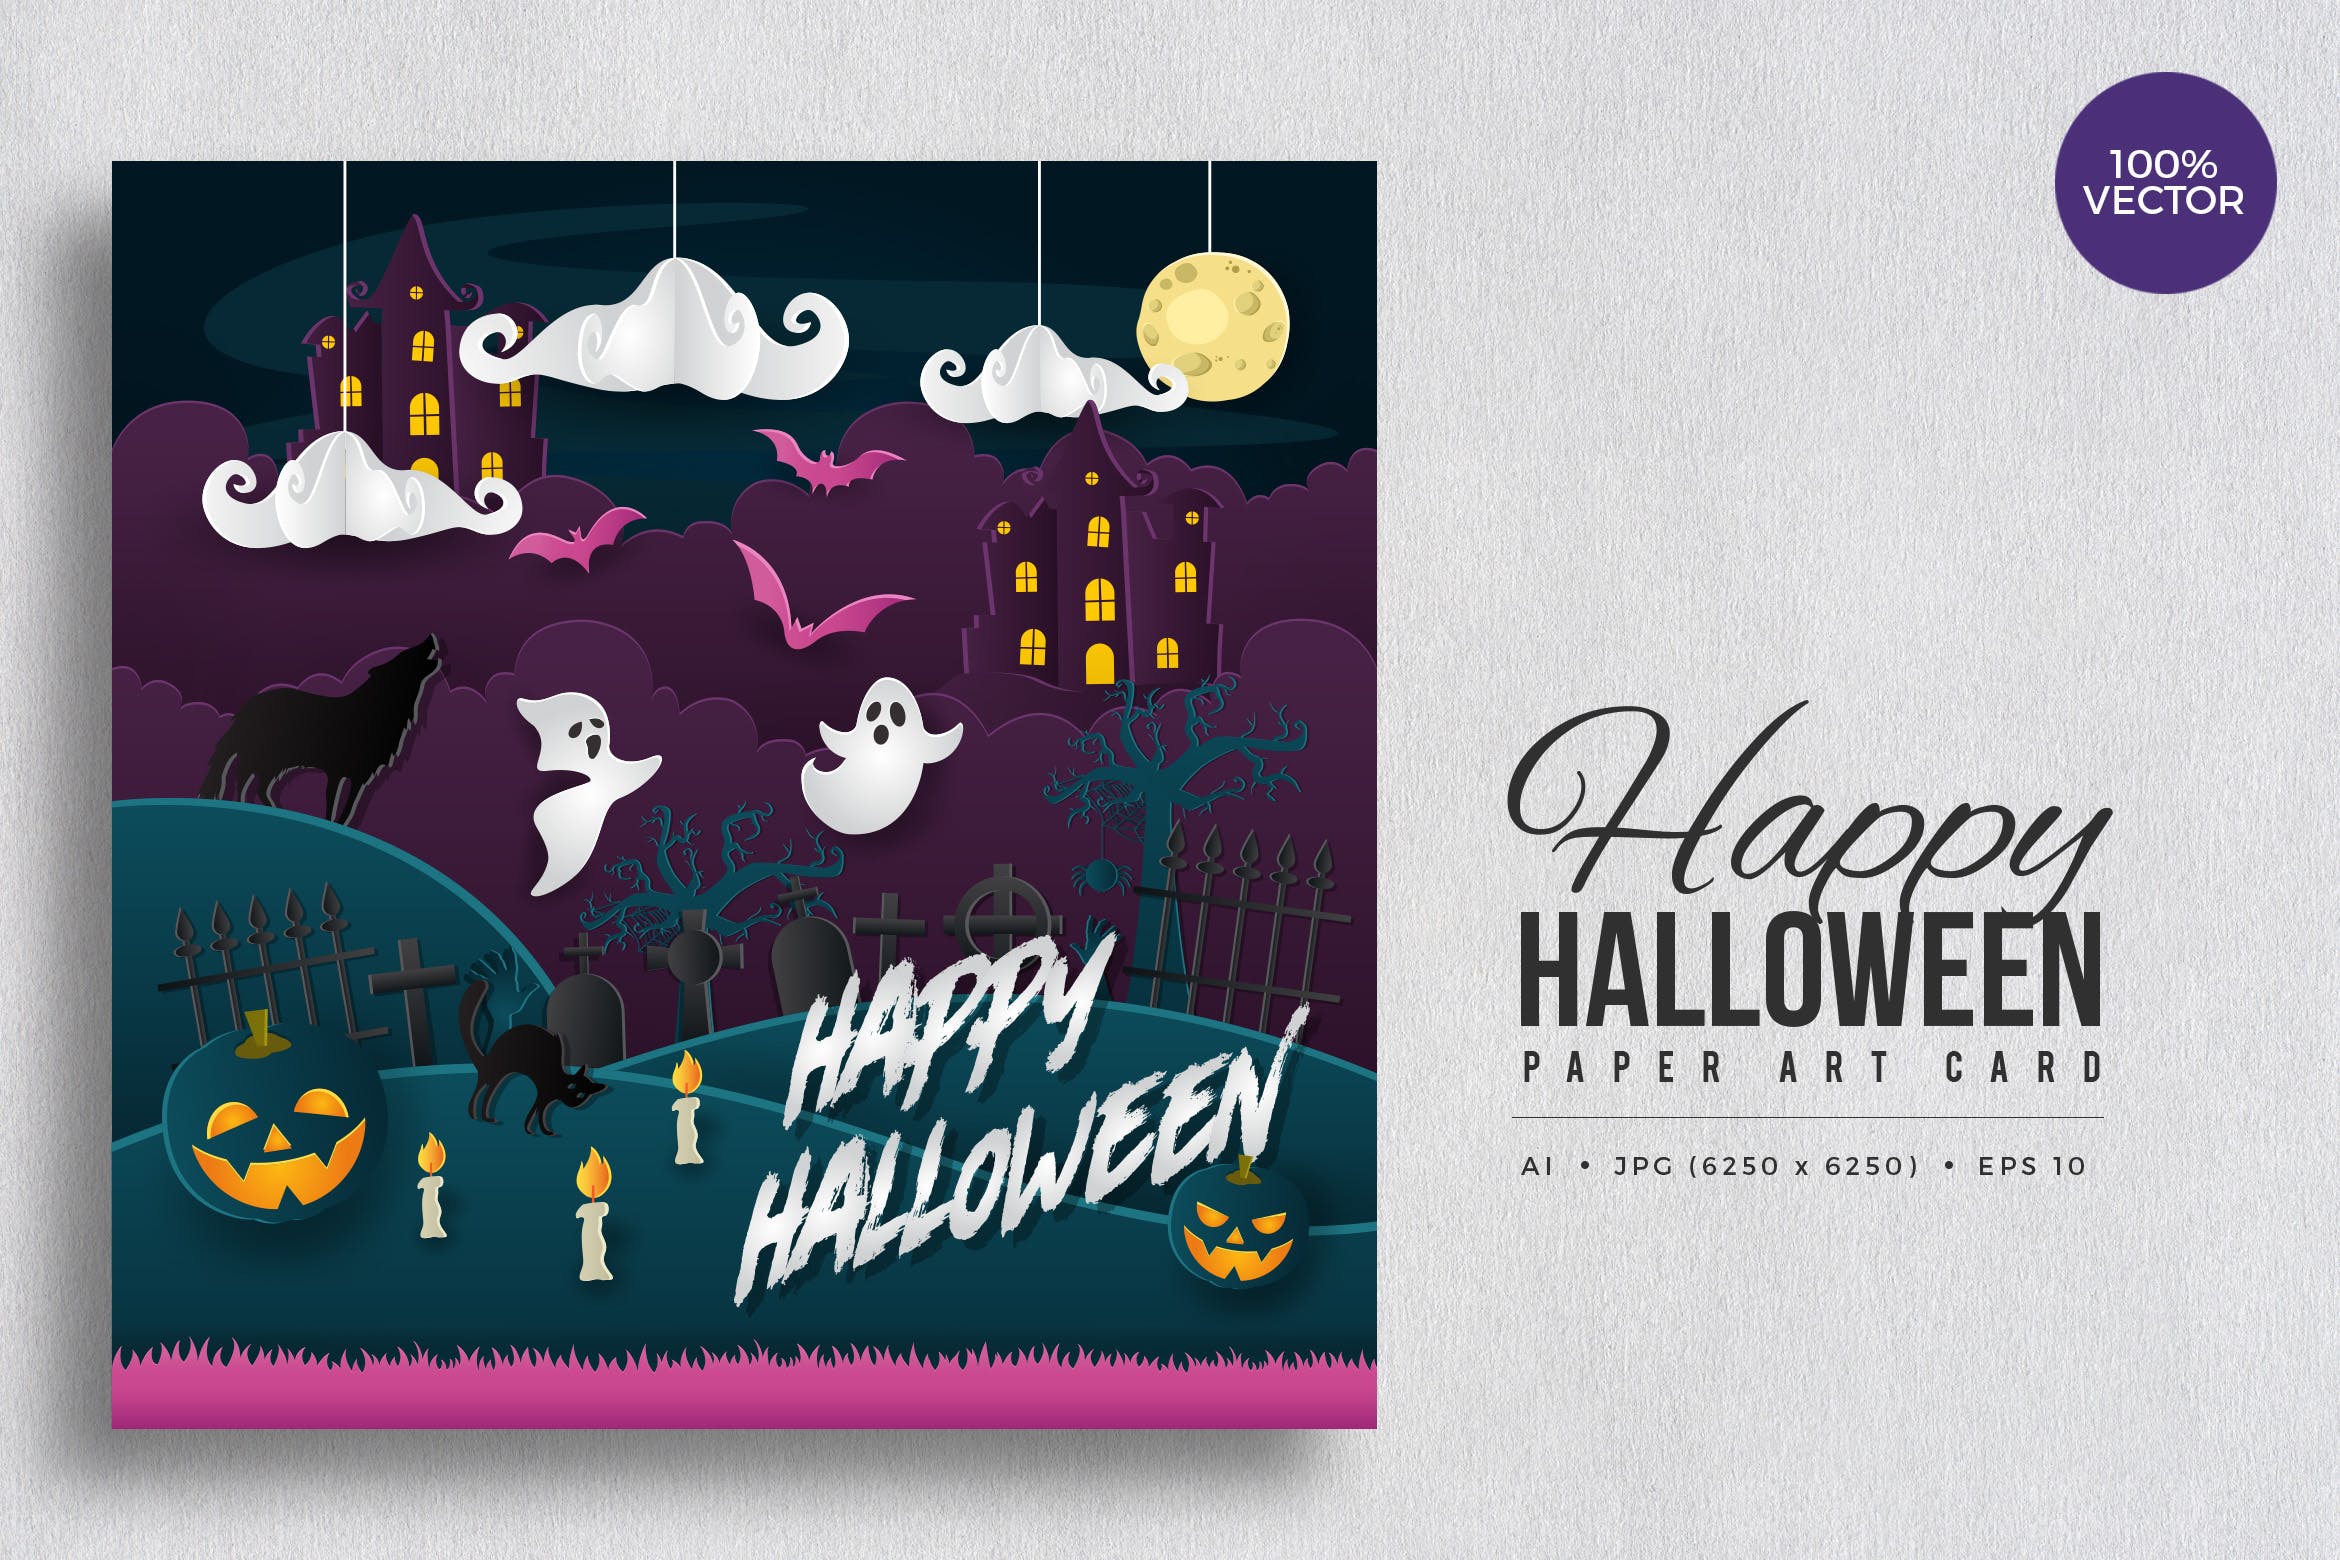 万圣节庆祝主题剪纸艺术矢量插画素材v4 Happy Halloween Paper Art Vector Card Vol.4插图